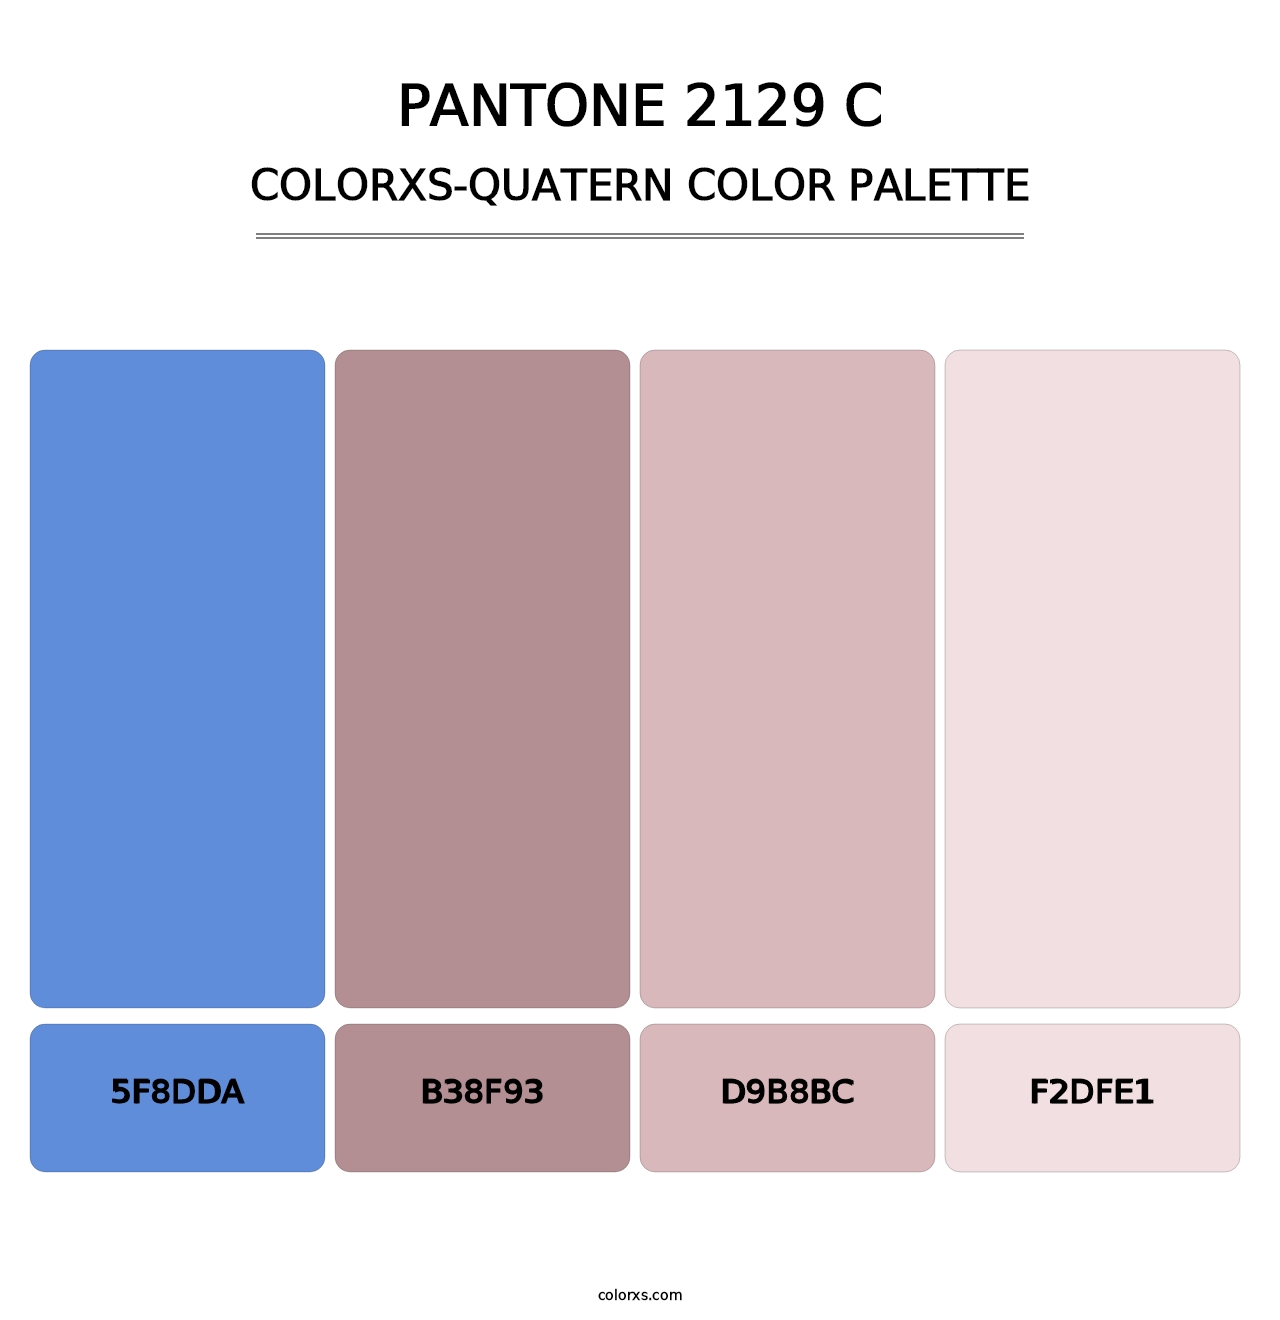 PANTONE 2129 C - Colorxs Quatern Palette